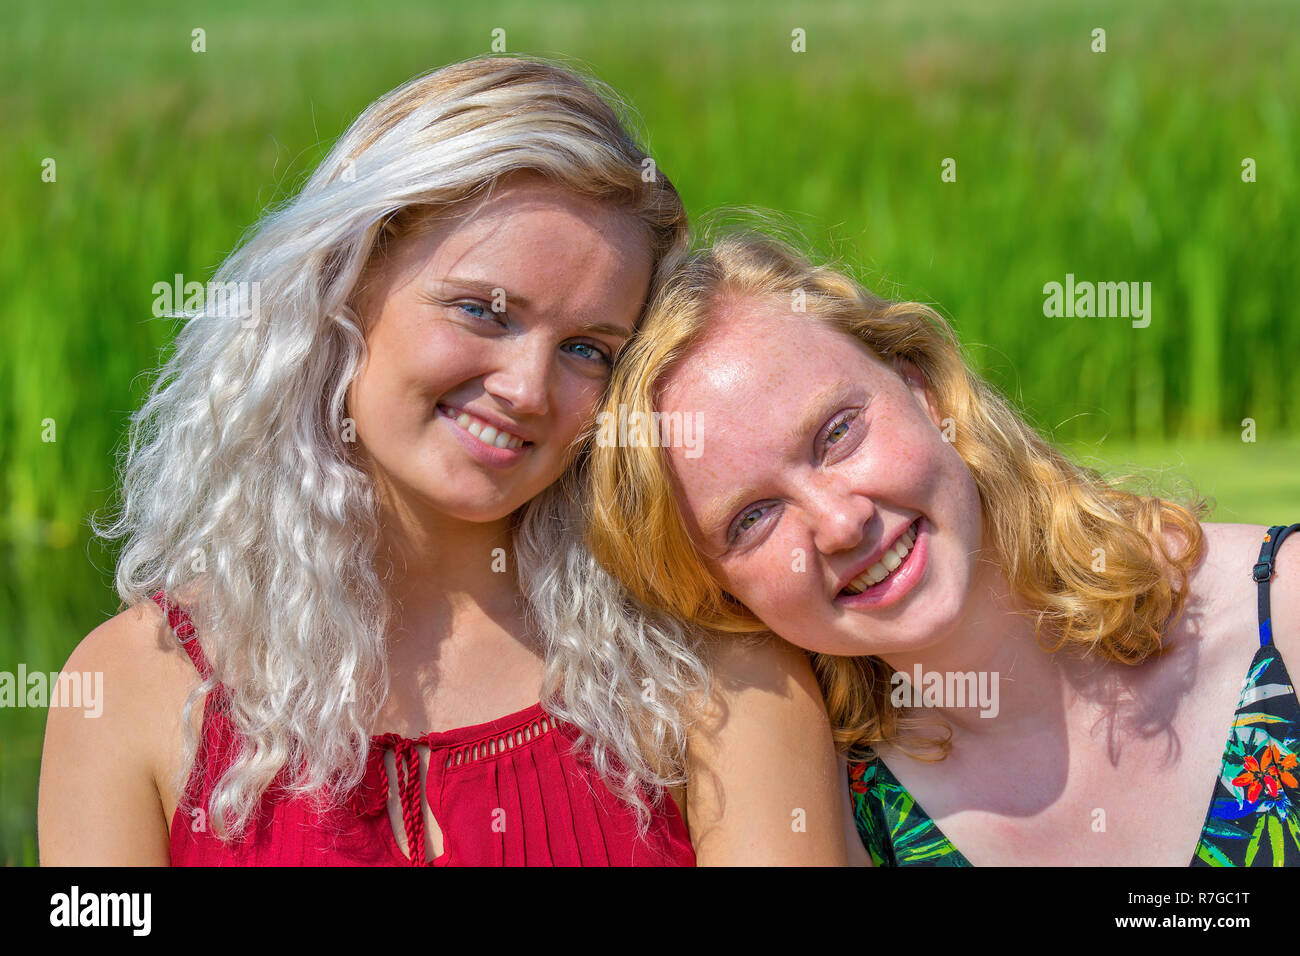 Porträt von zwei schließen junge holländische Schwestern in grüner Natur Stockfoto